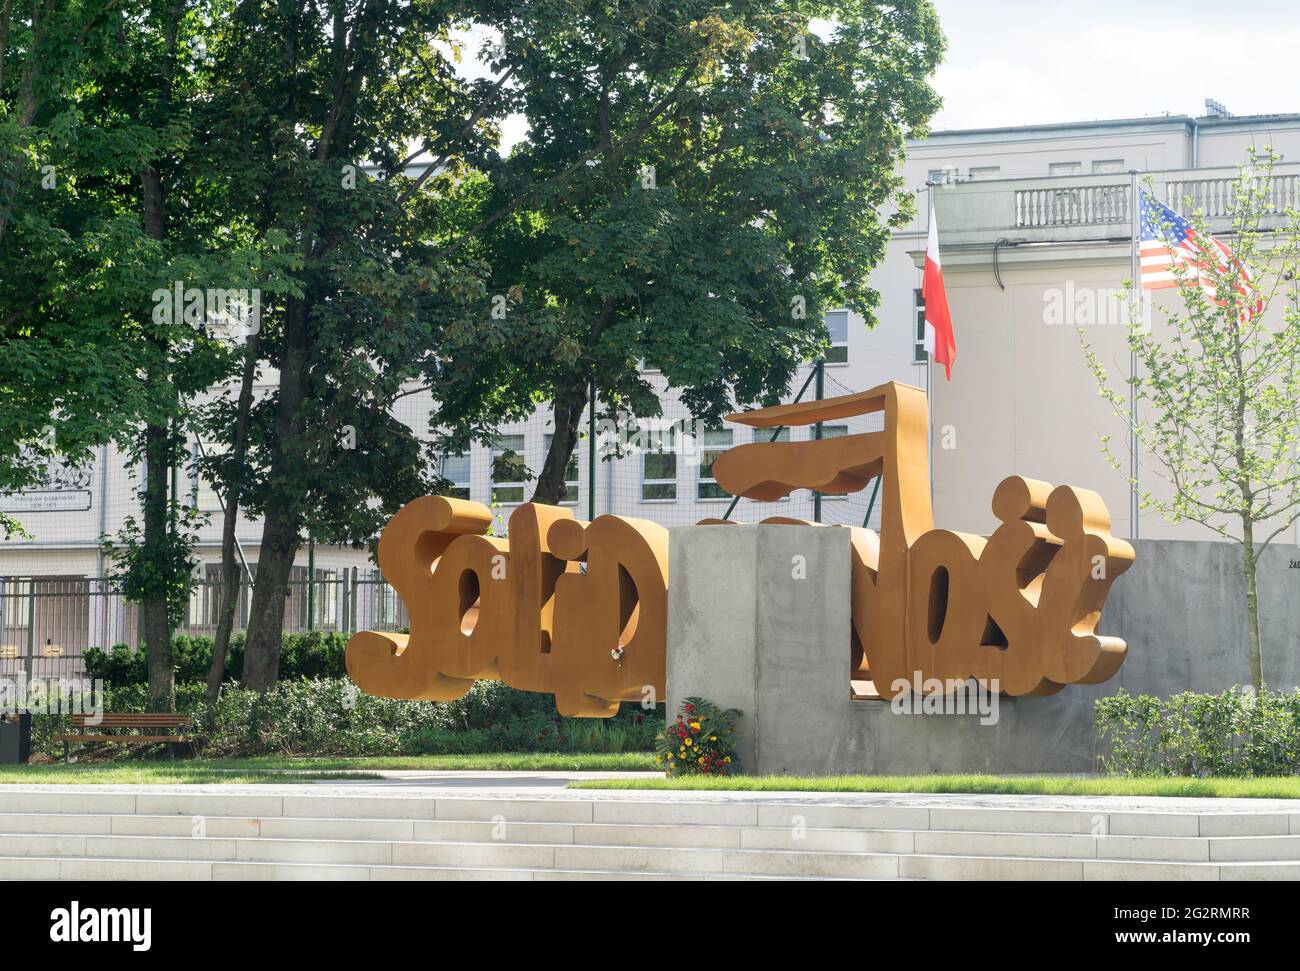 VARSAVIA, POLONIA, 11,2021 giugno: Il Monumento della solidarietà 'olidarność' a Varsavia svelato il 04 giugno 2021 in occasione del 32° anniversario della Foto Stock